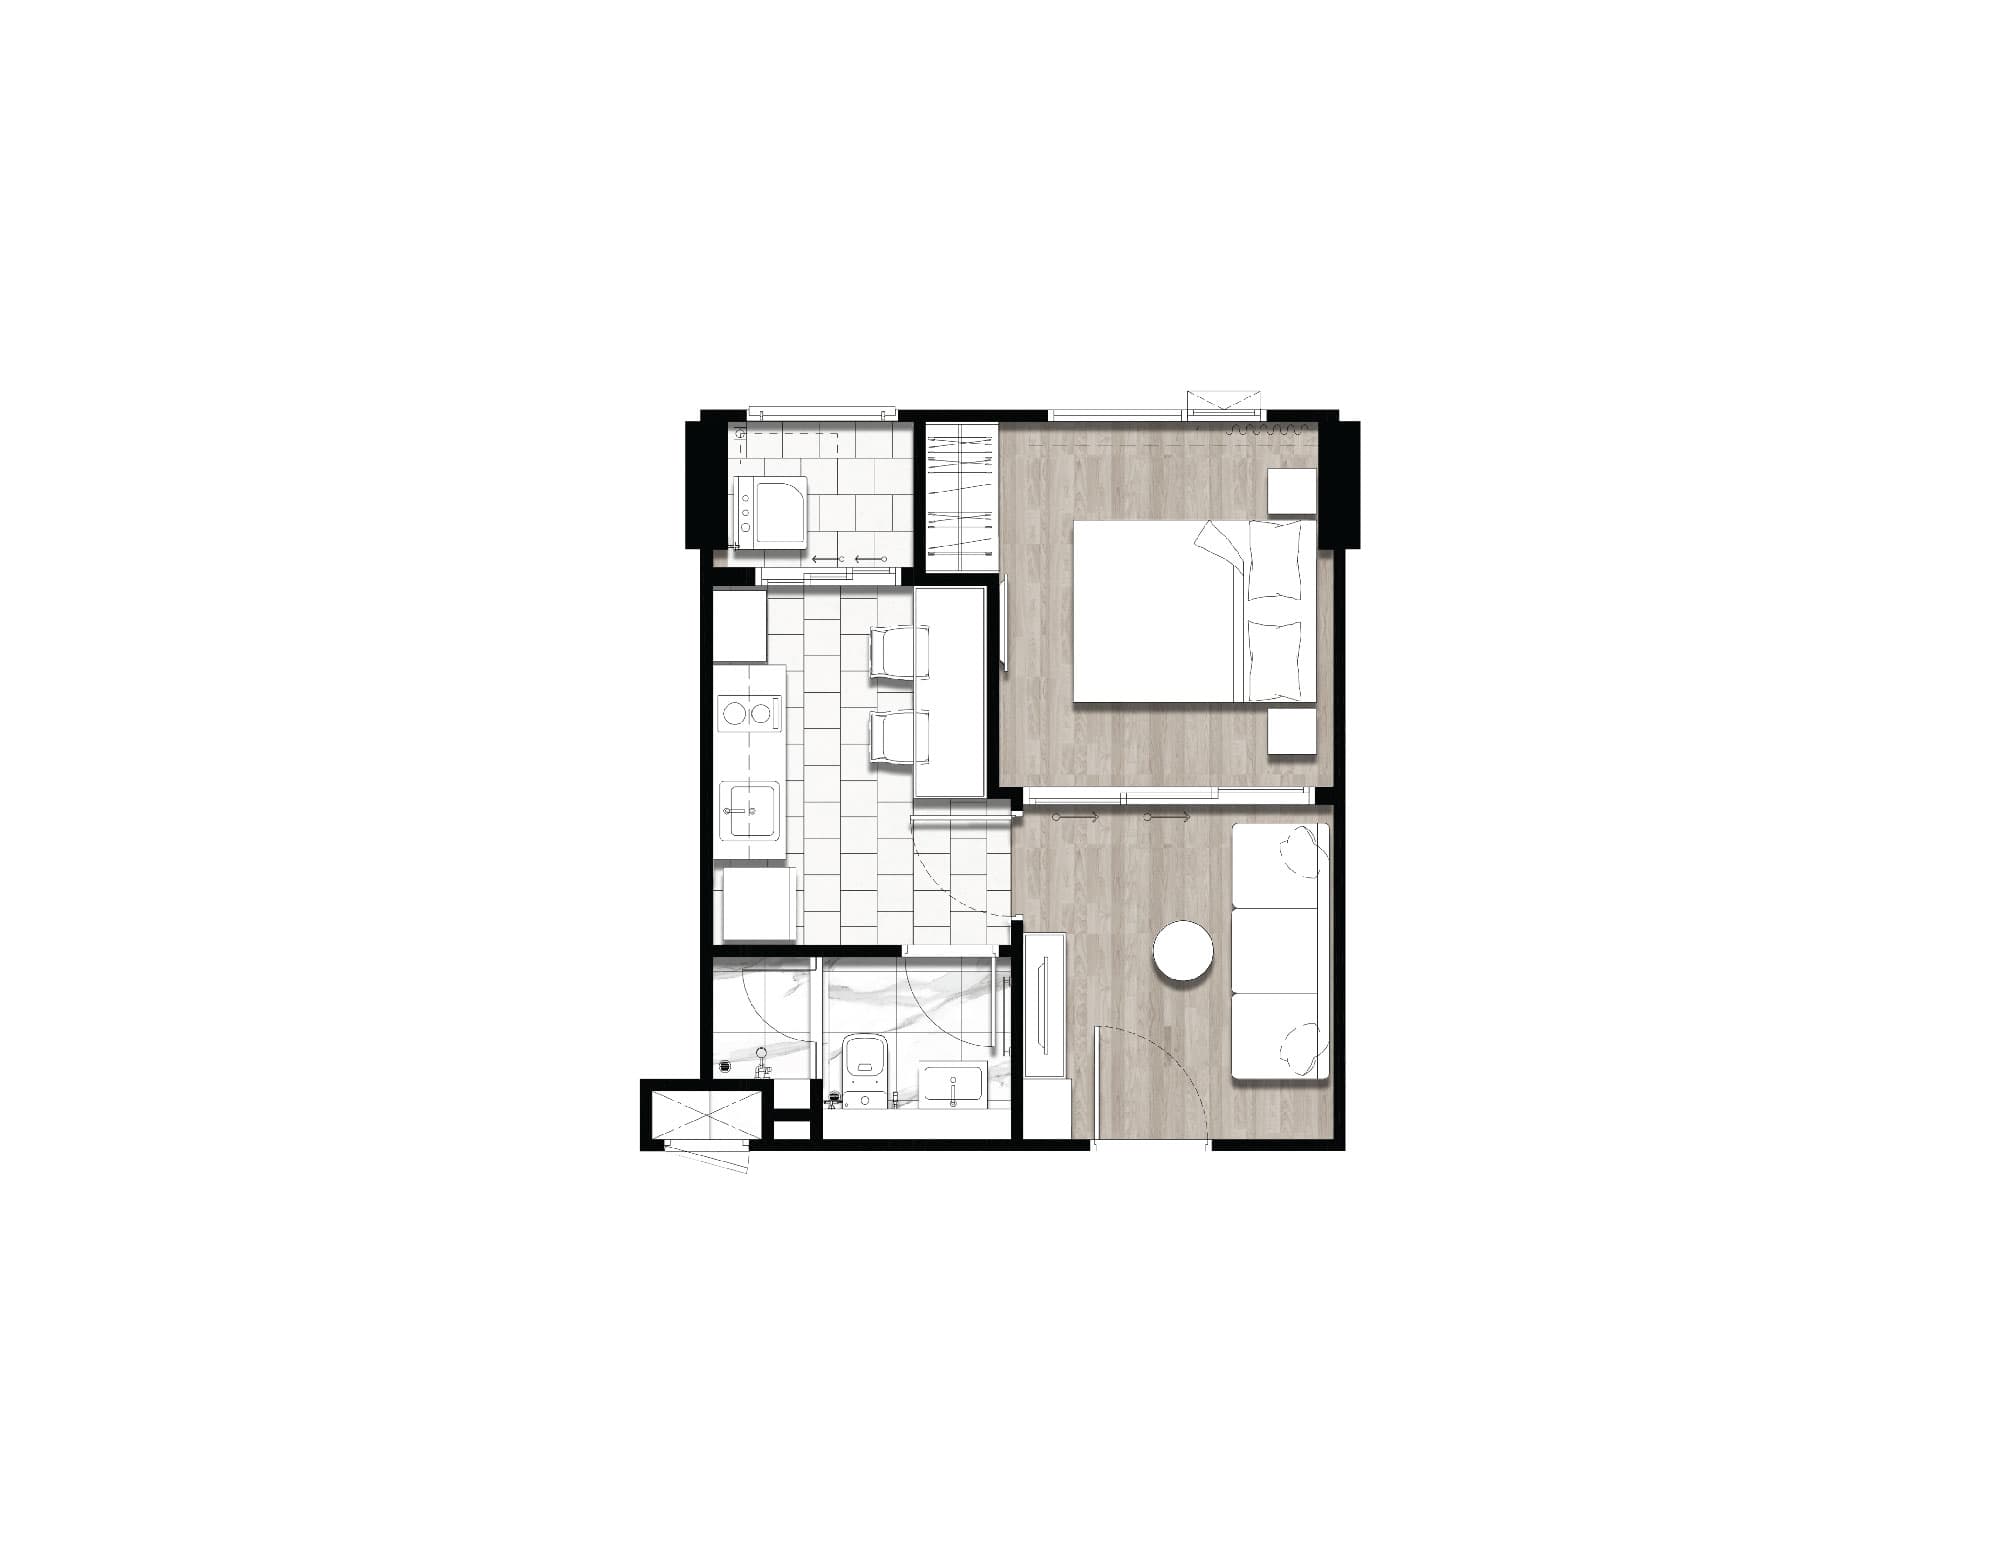 CIELA Charoen Nakhon-1 Bedroom layout - เซียล่า เจริญนคร (CIELA Charoen Nakhon)